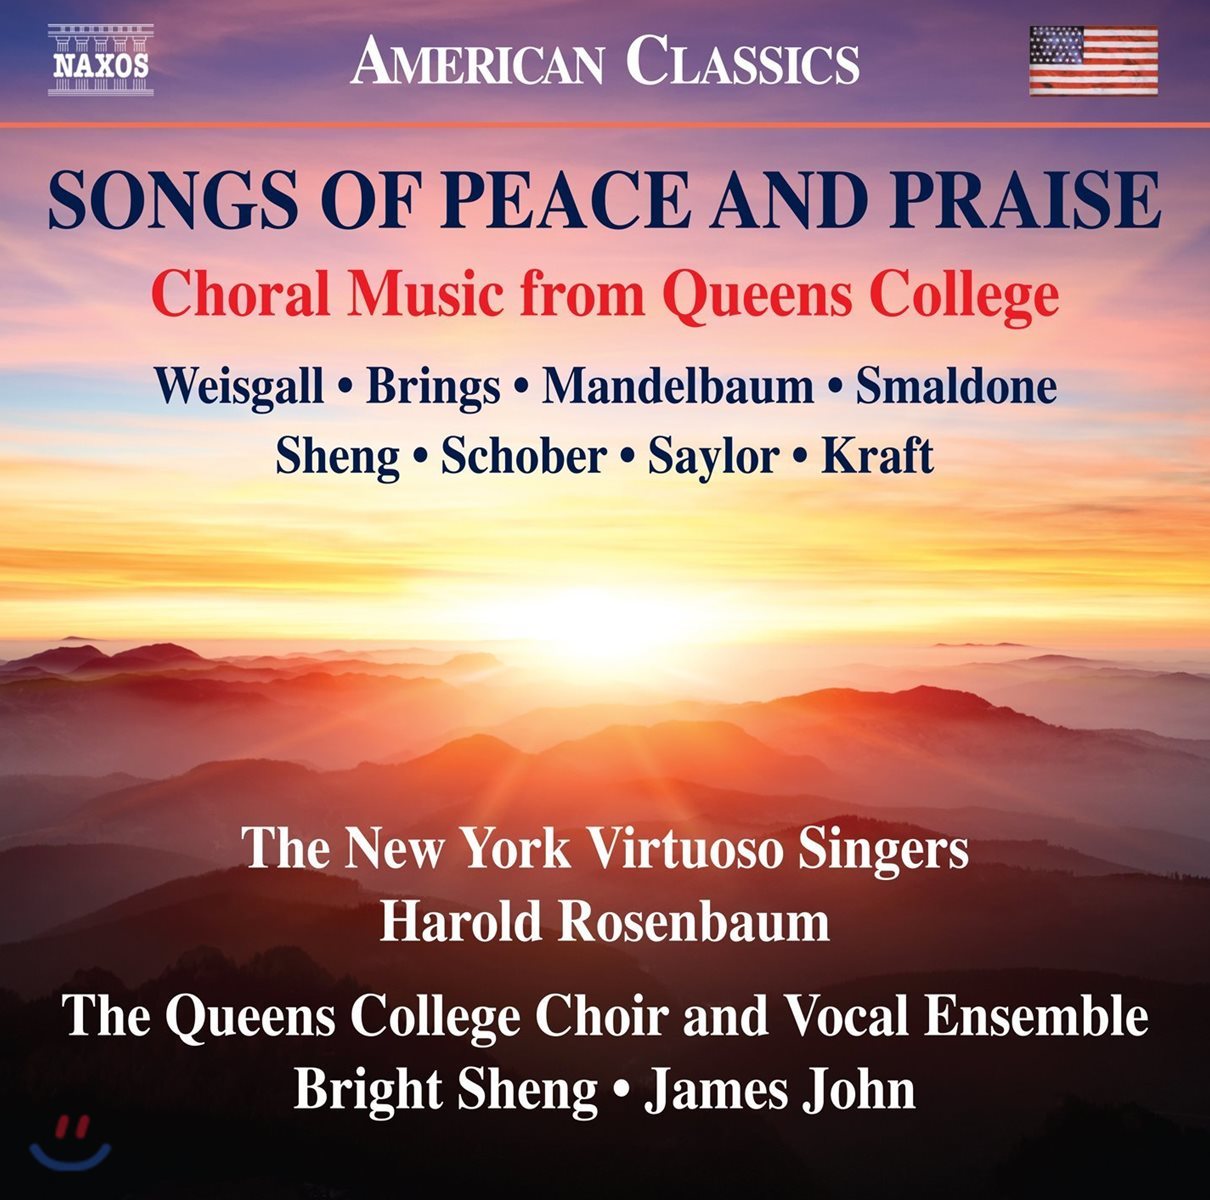 Queens College Choir & Vocal Ensemble 평화와 찬양을 위한 노래들 - 퀸스 컬리지의 합창 음악 (Songs Of Peace And Praise)